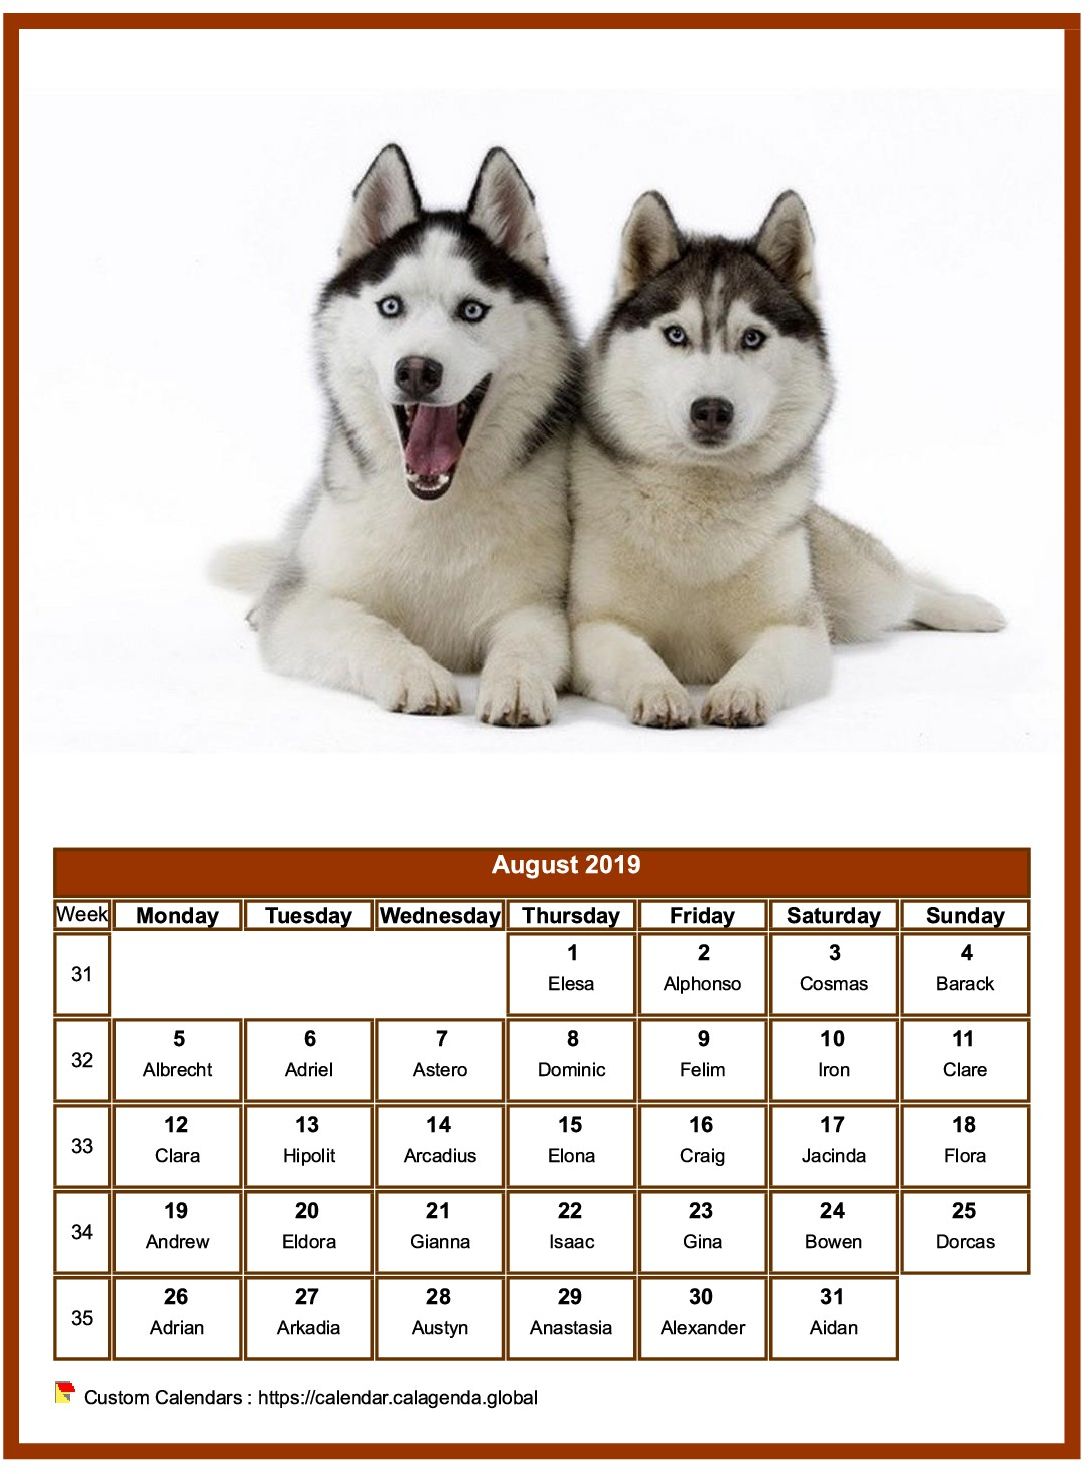 Calendar August 2019 dogs